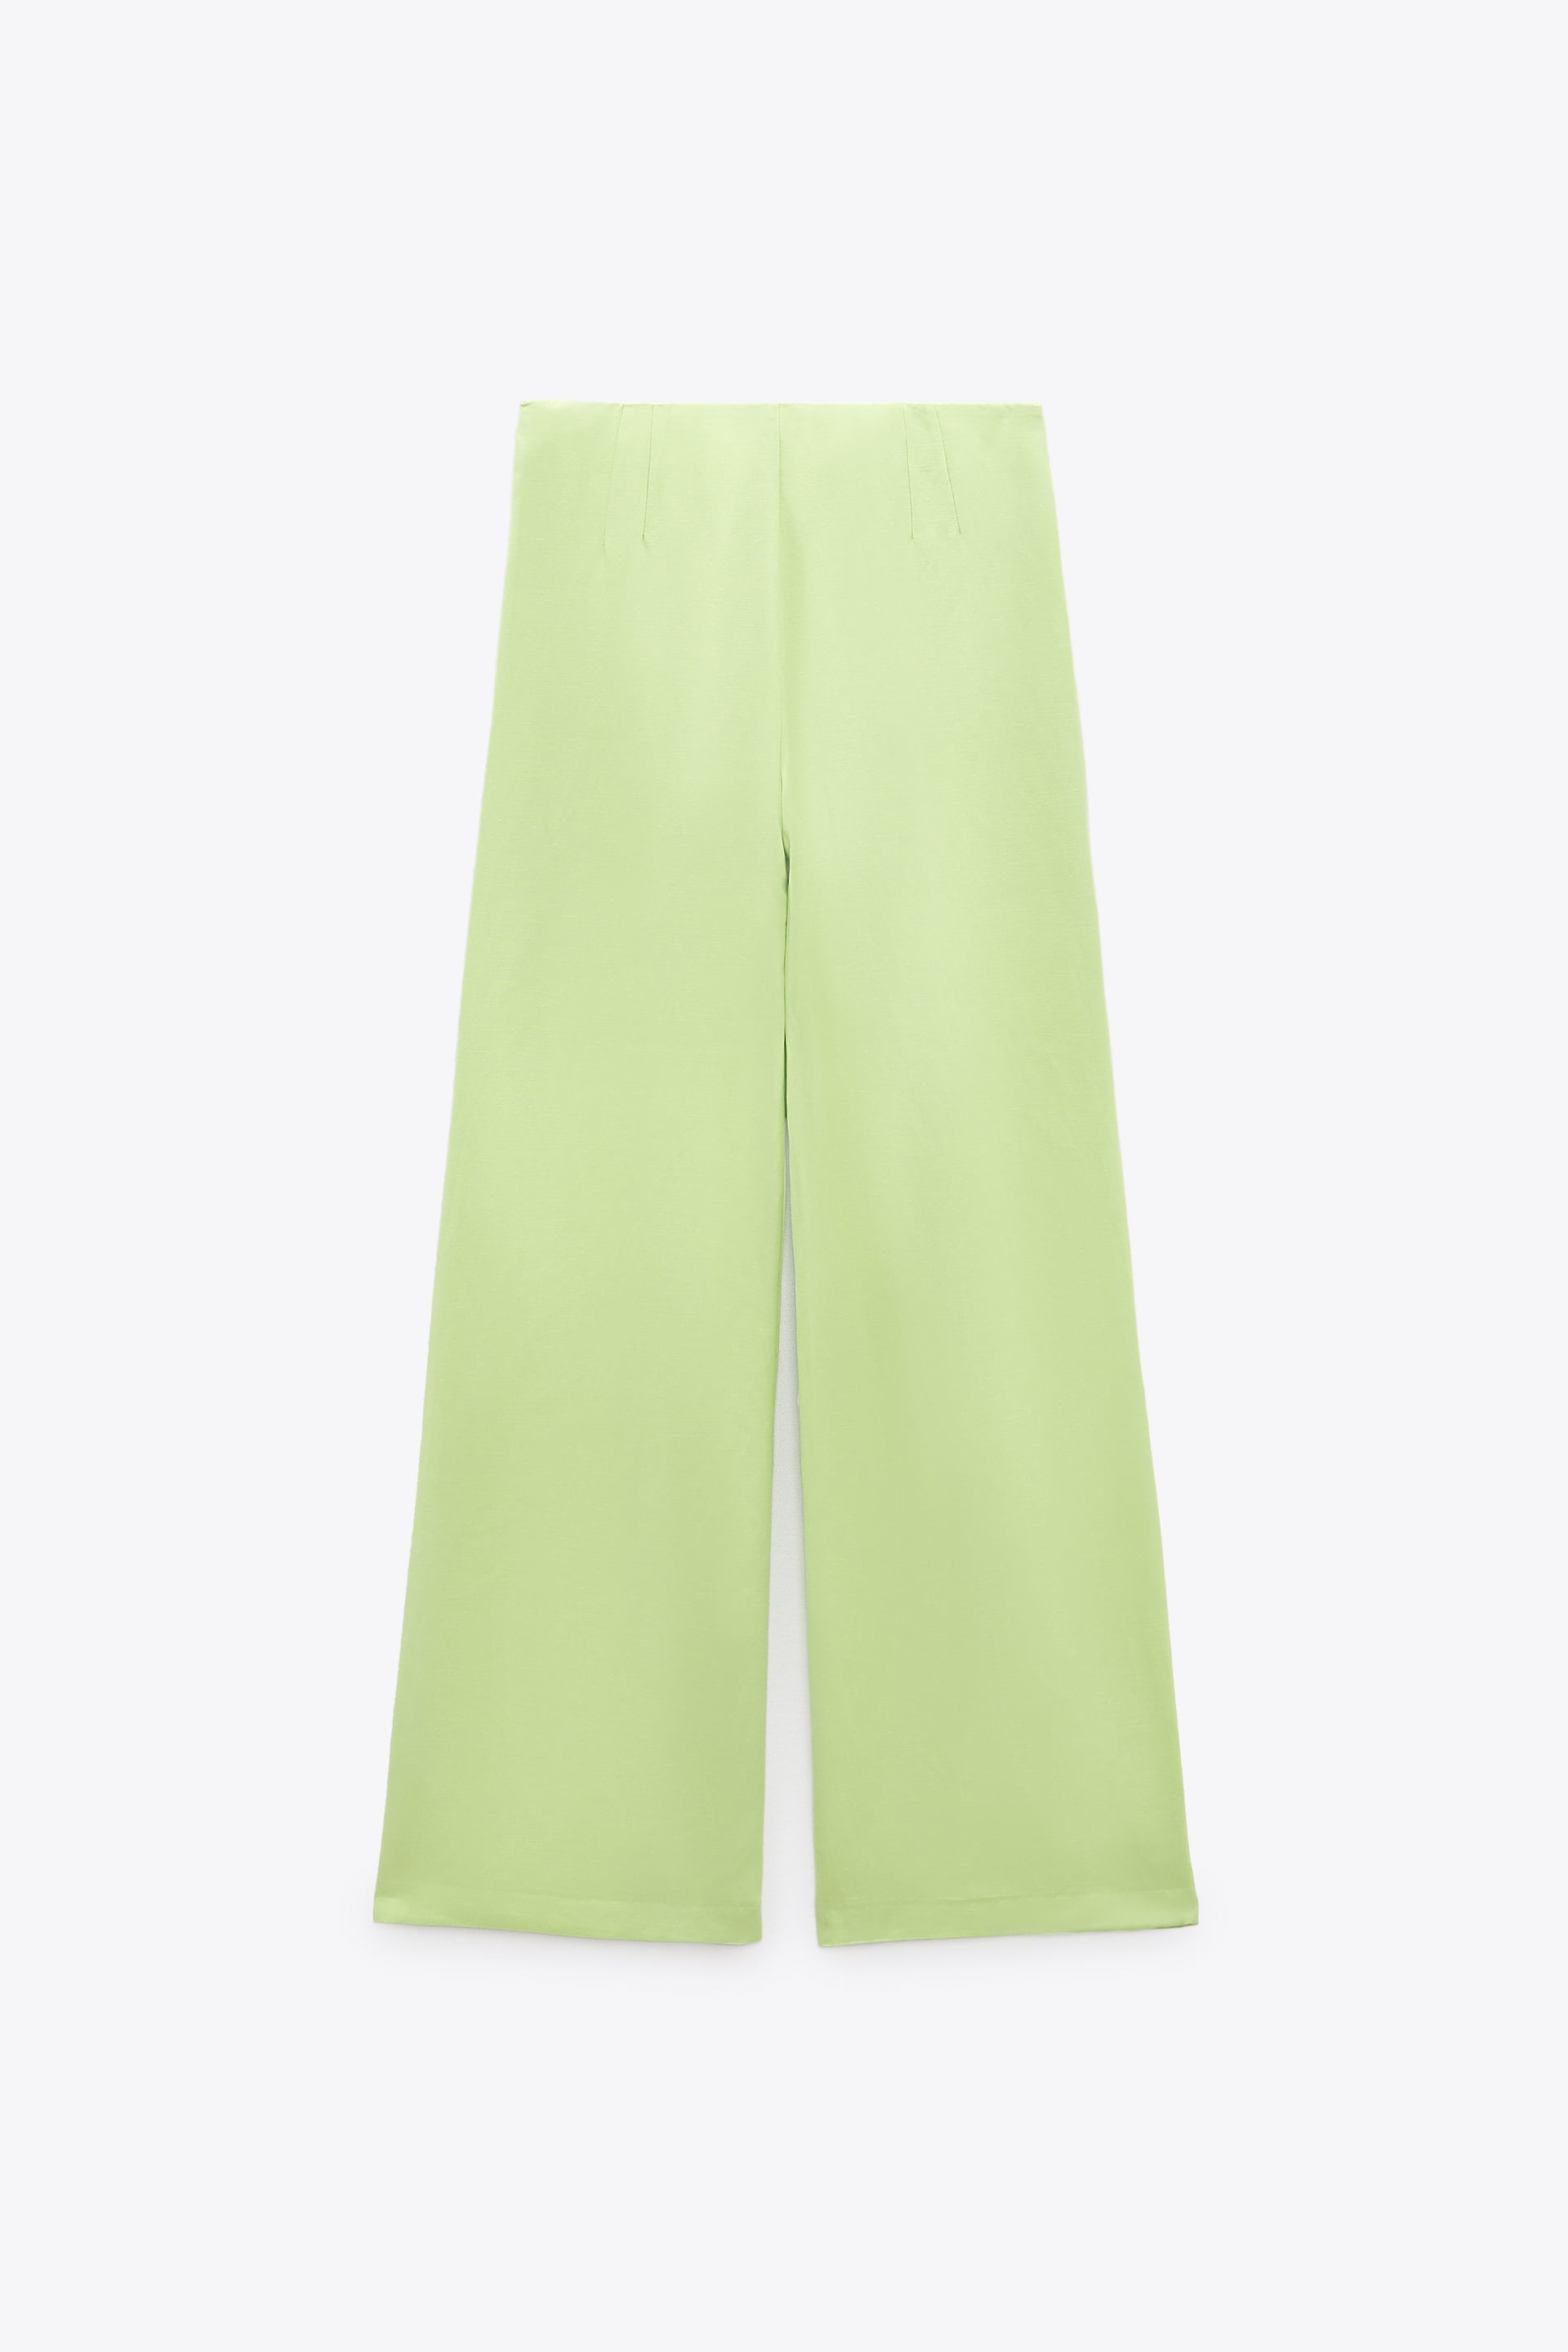 FULL LENGTH LINEN BLEND PANTS - Light green